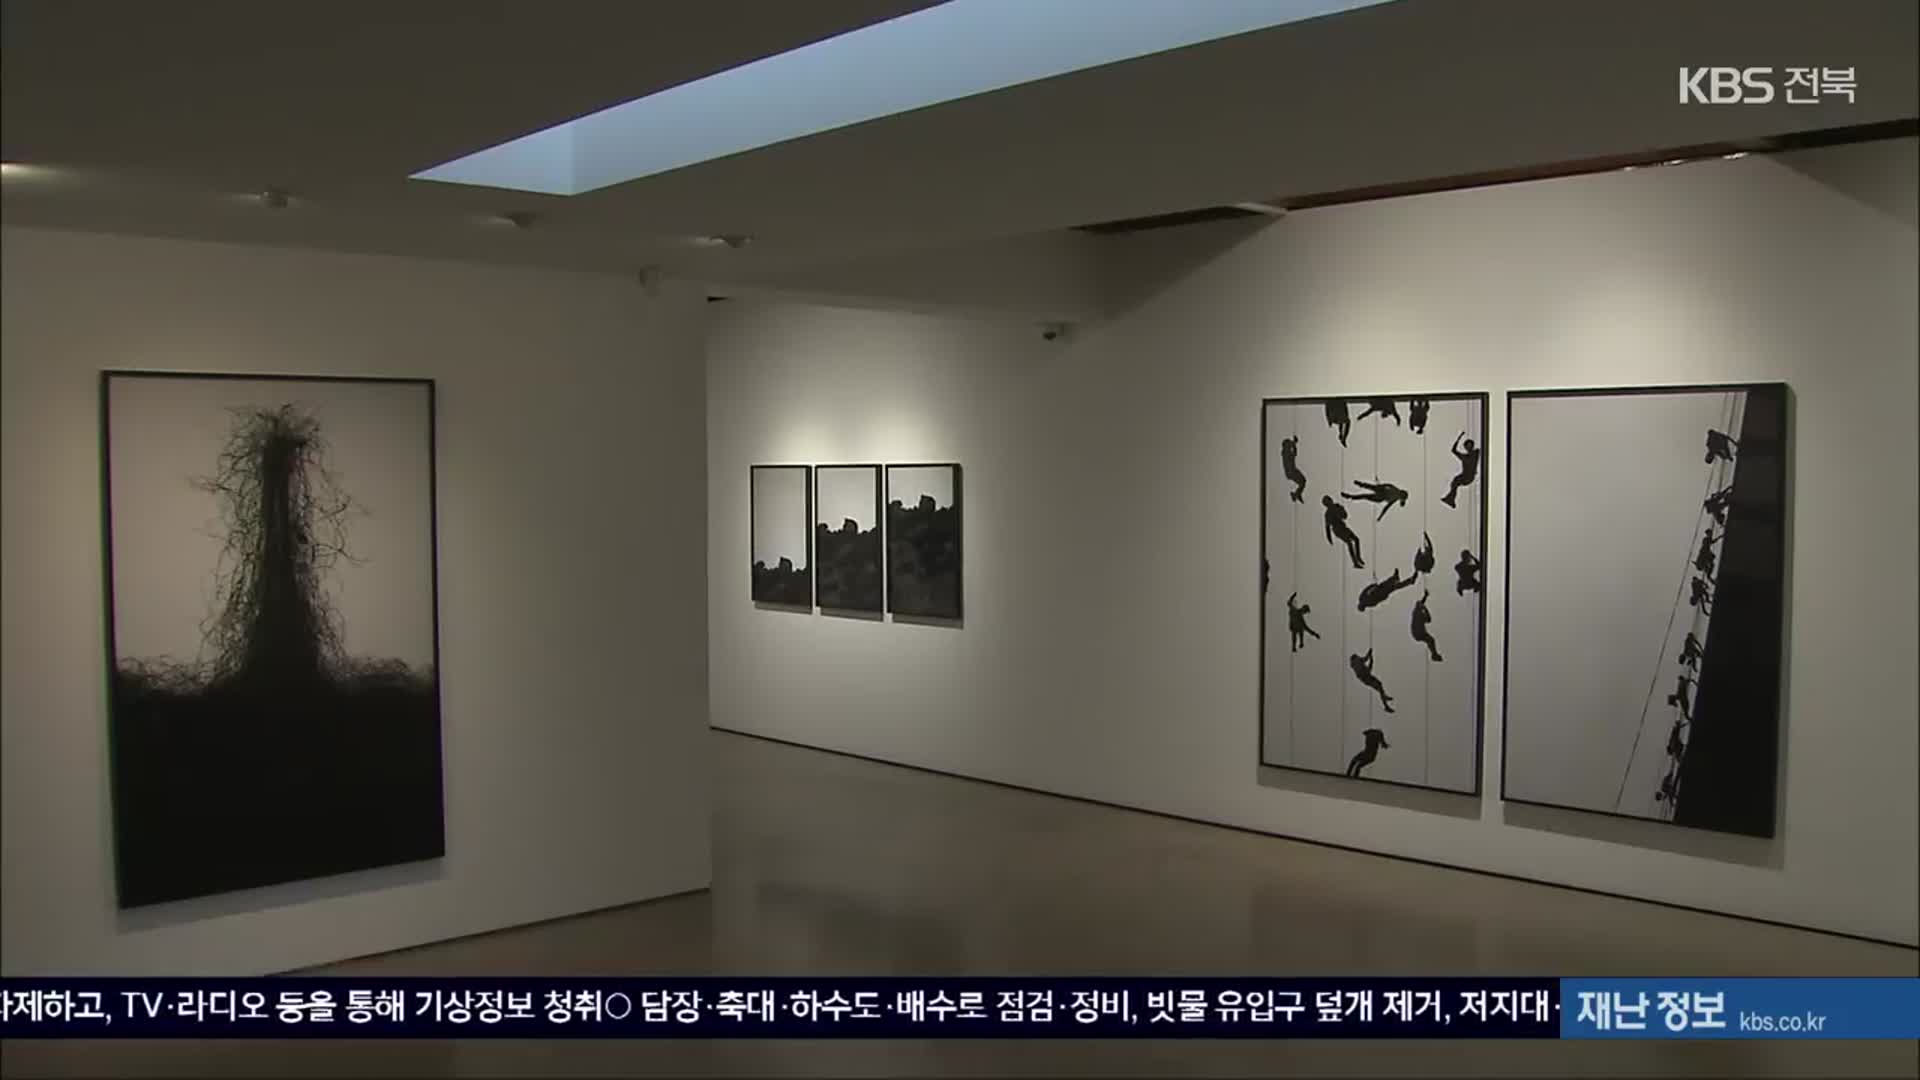 역광 사진으로 포착한 한국 사회의 초상